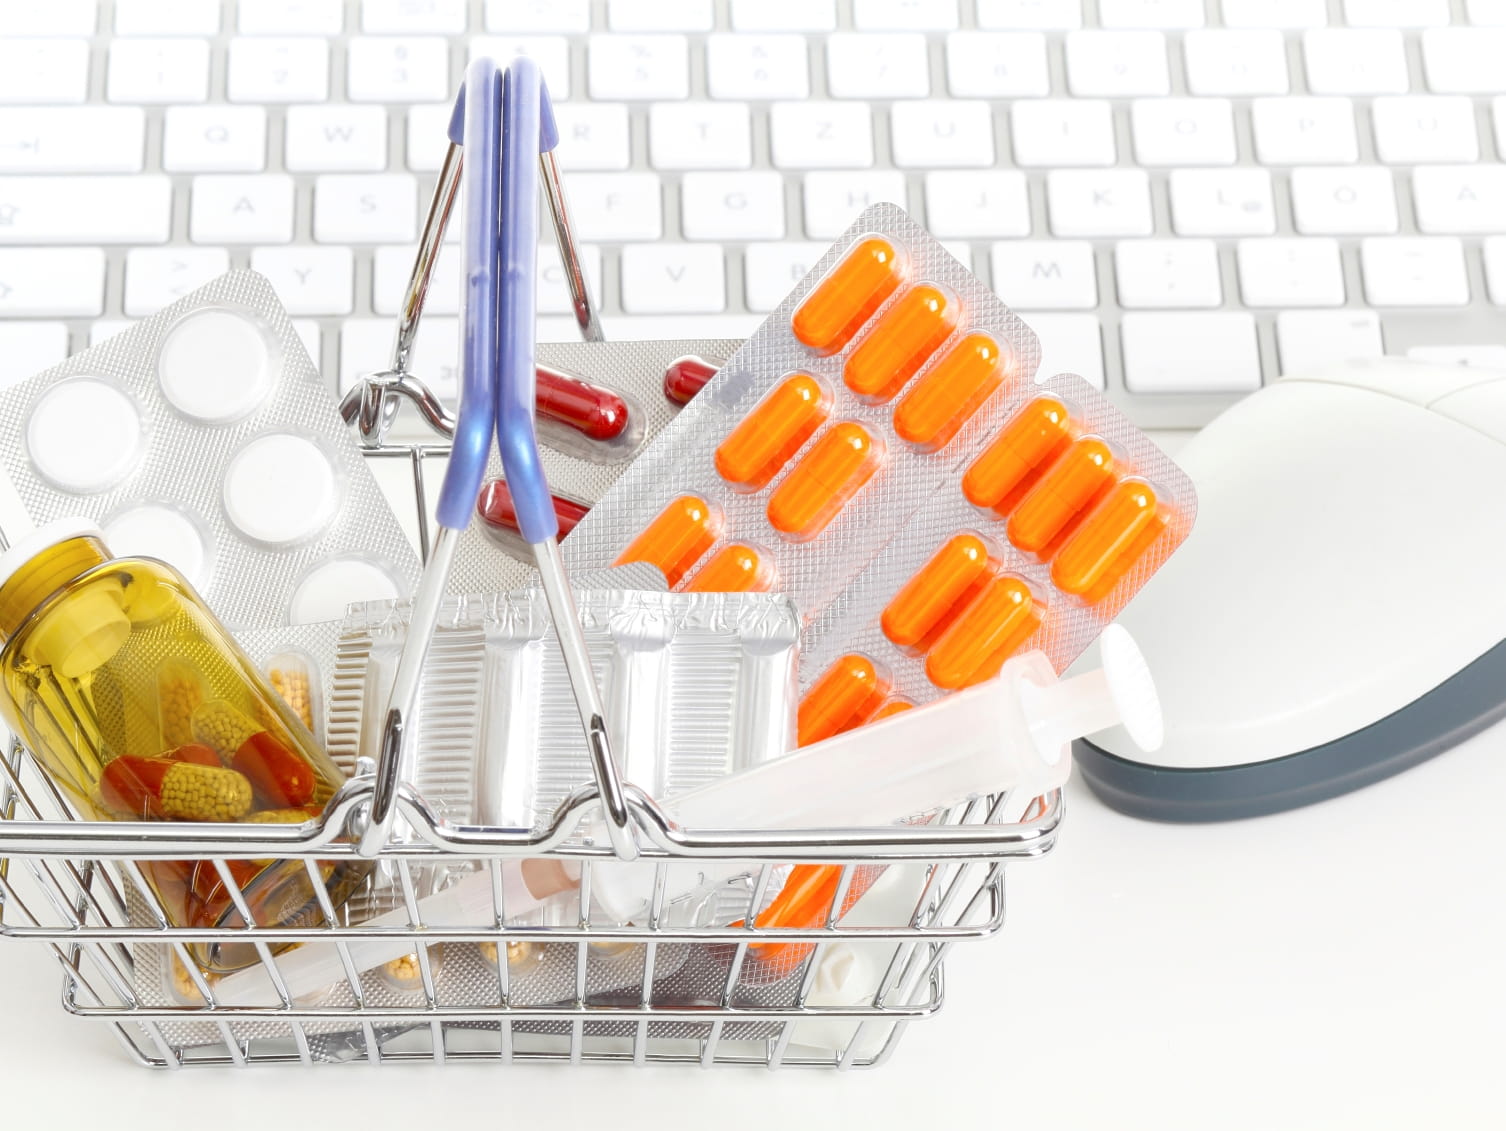 Online Pharmacies: Avoid the Frauds